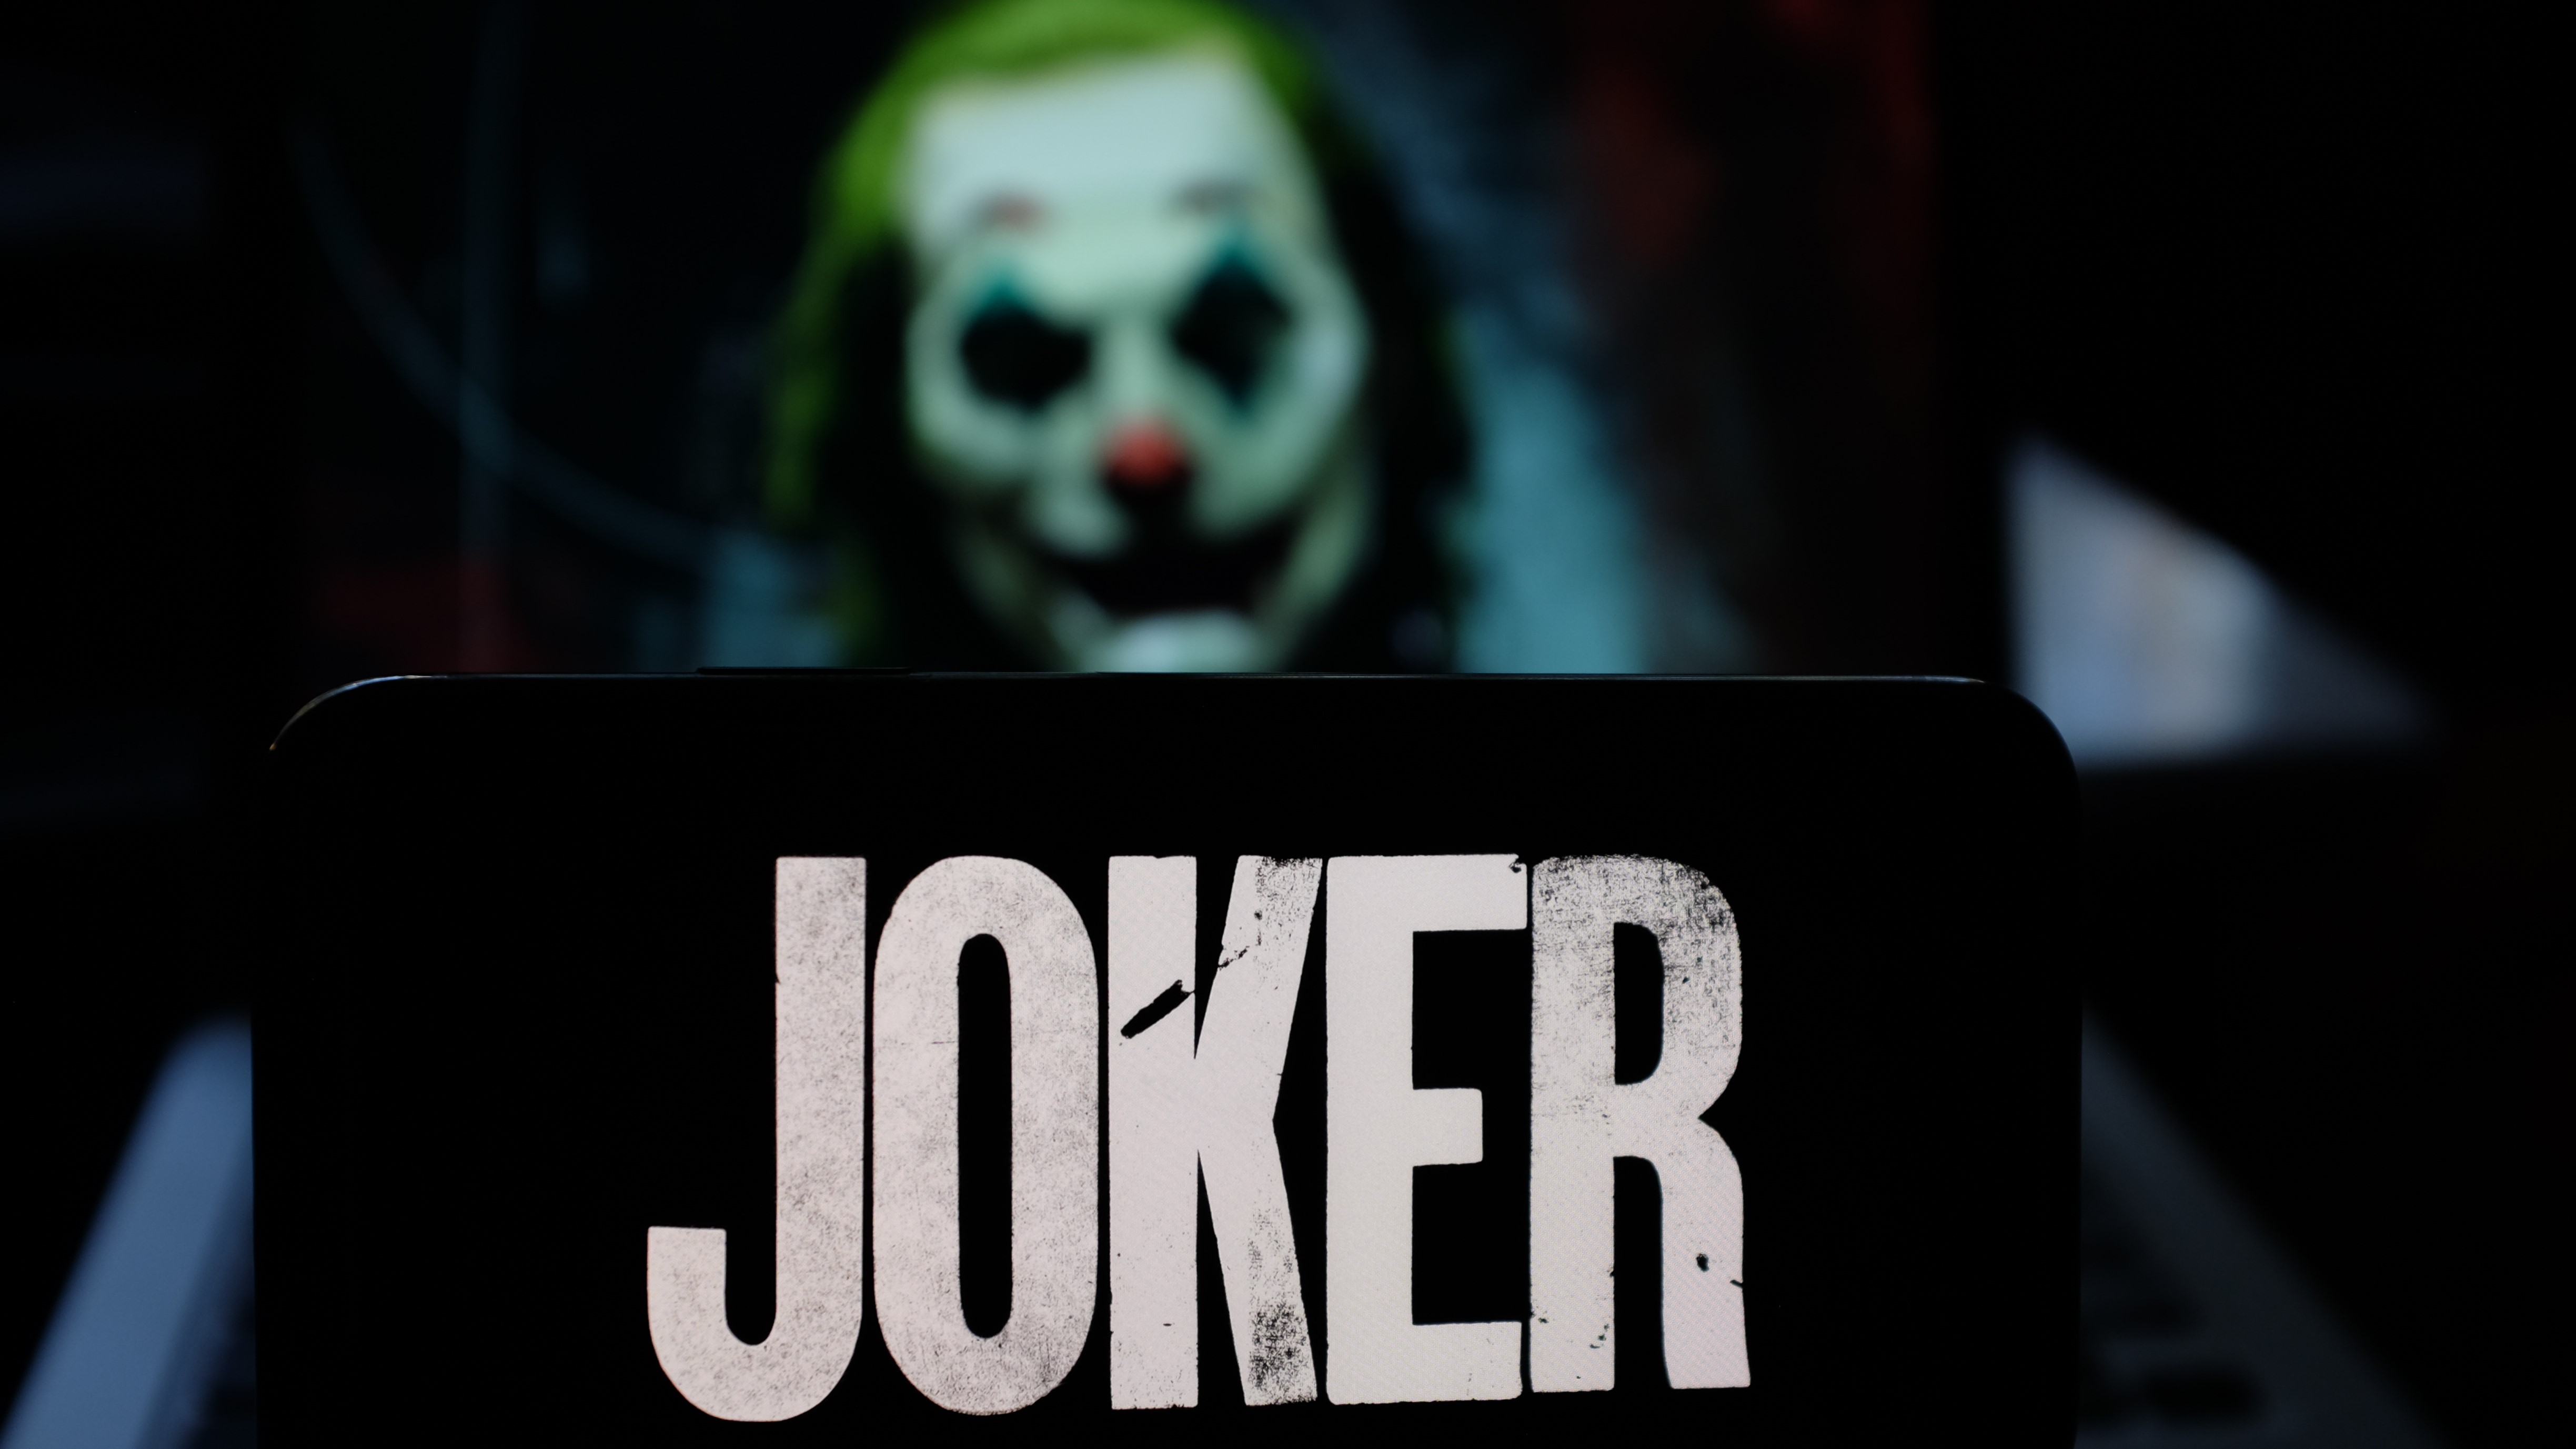 An image of Joker representing Joker malware